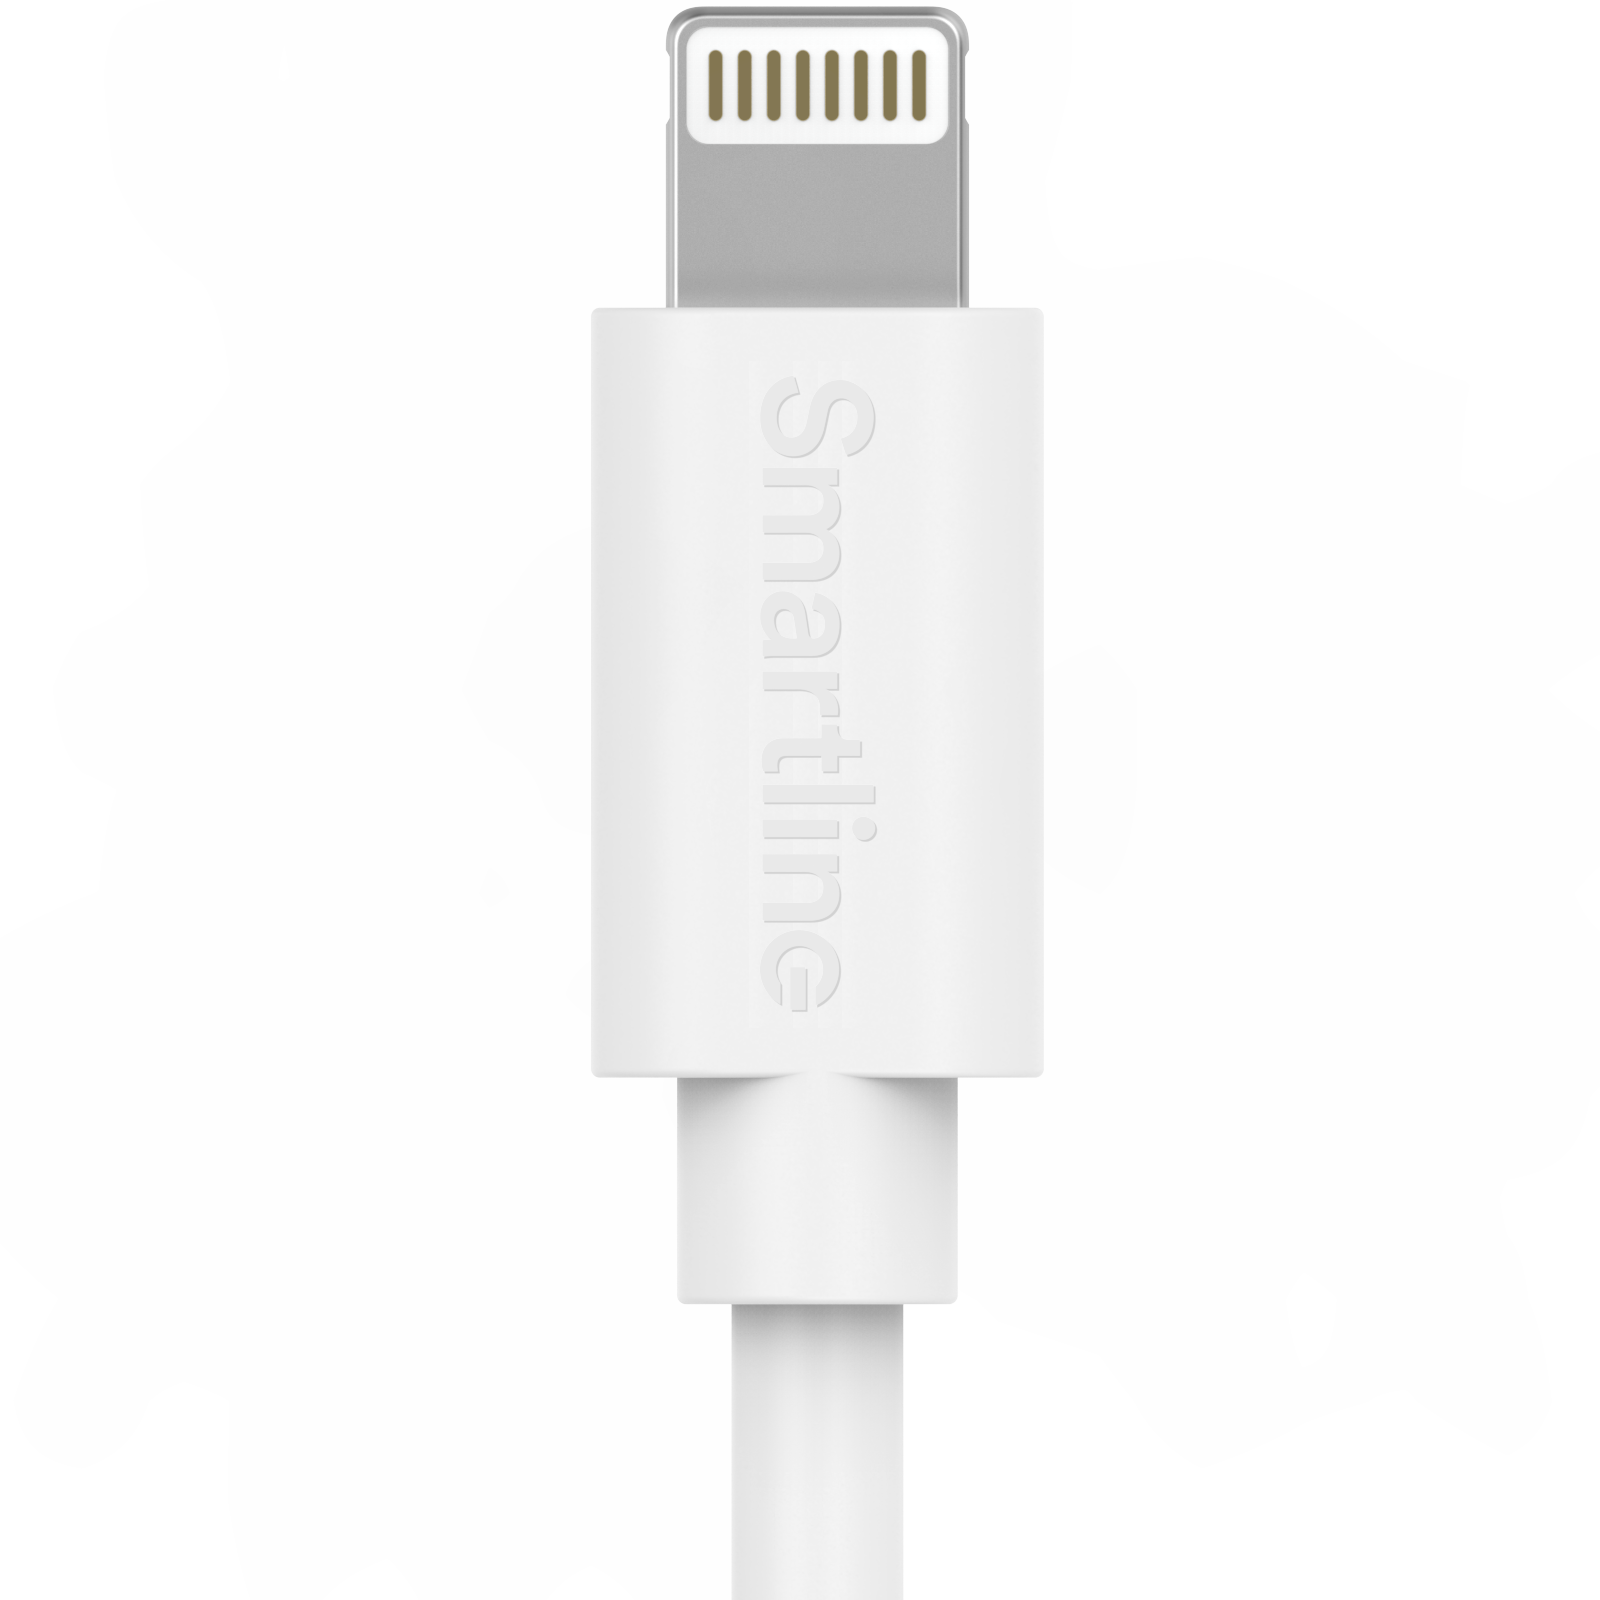 Zwei-in-eins-Ladegerät für iPhone 8 - 2m-Kabel und Wandladegerät - Smartline